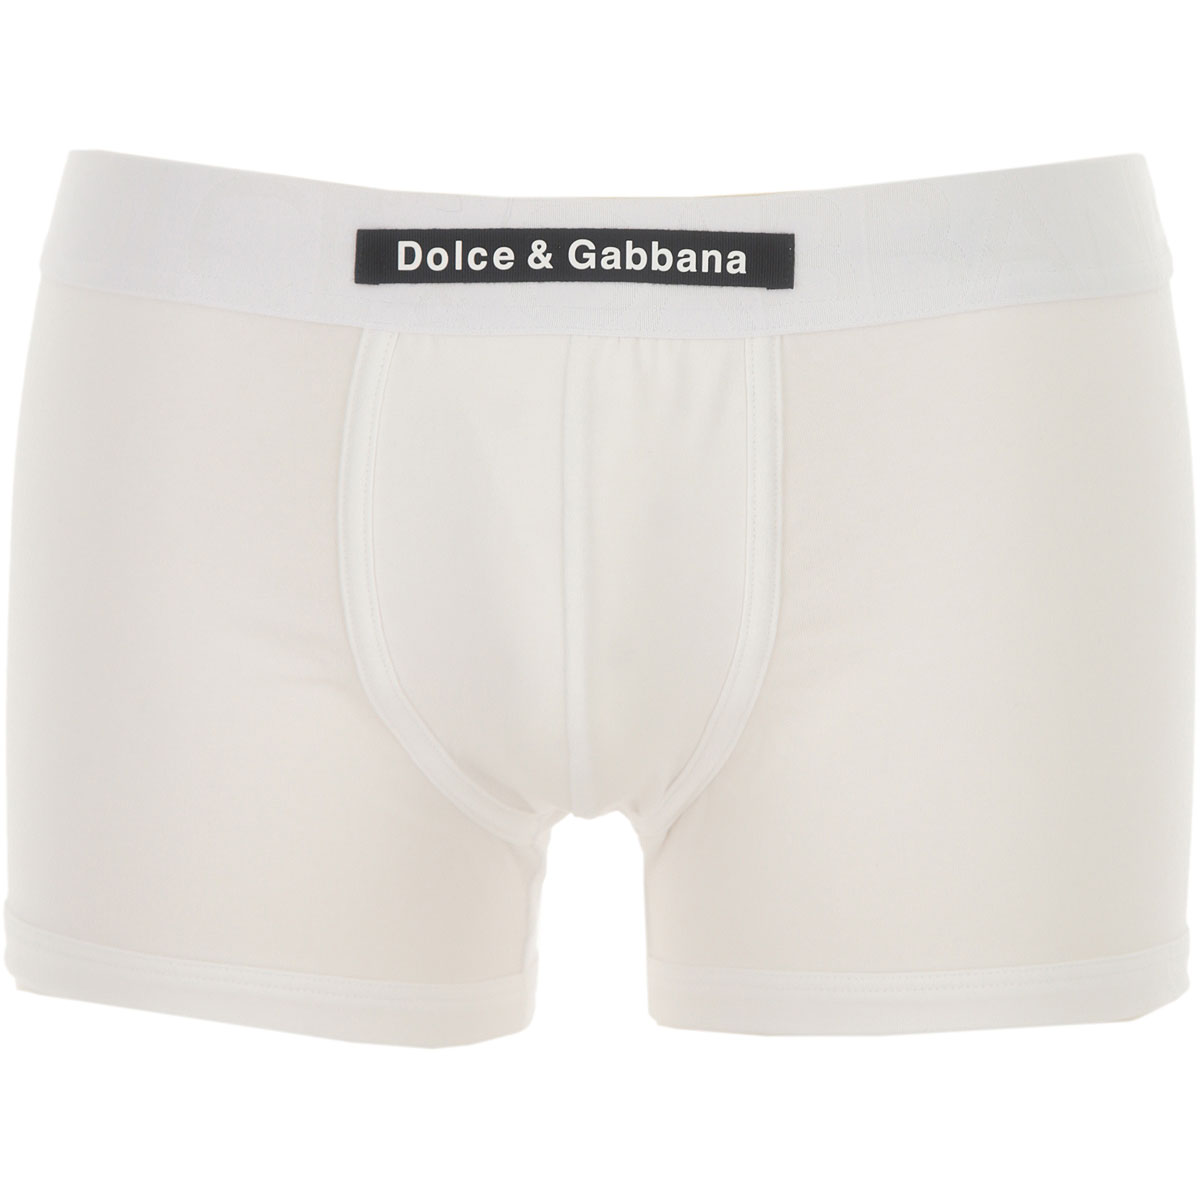 Mens Underwear Dolce & Gabbana, Style code: m4d31j-0ualg-w0800